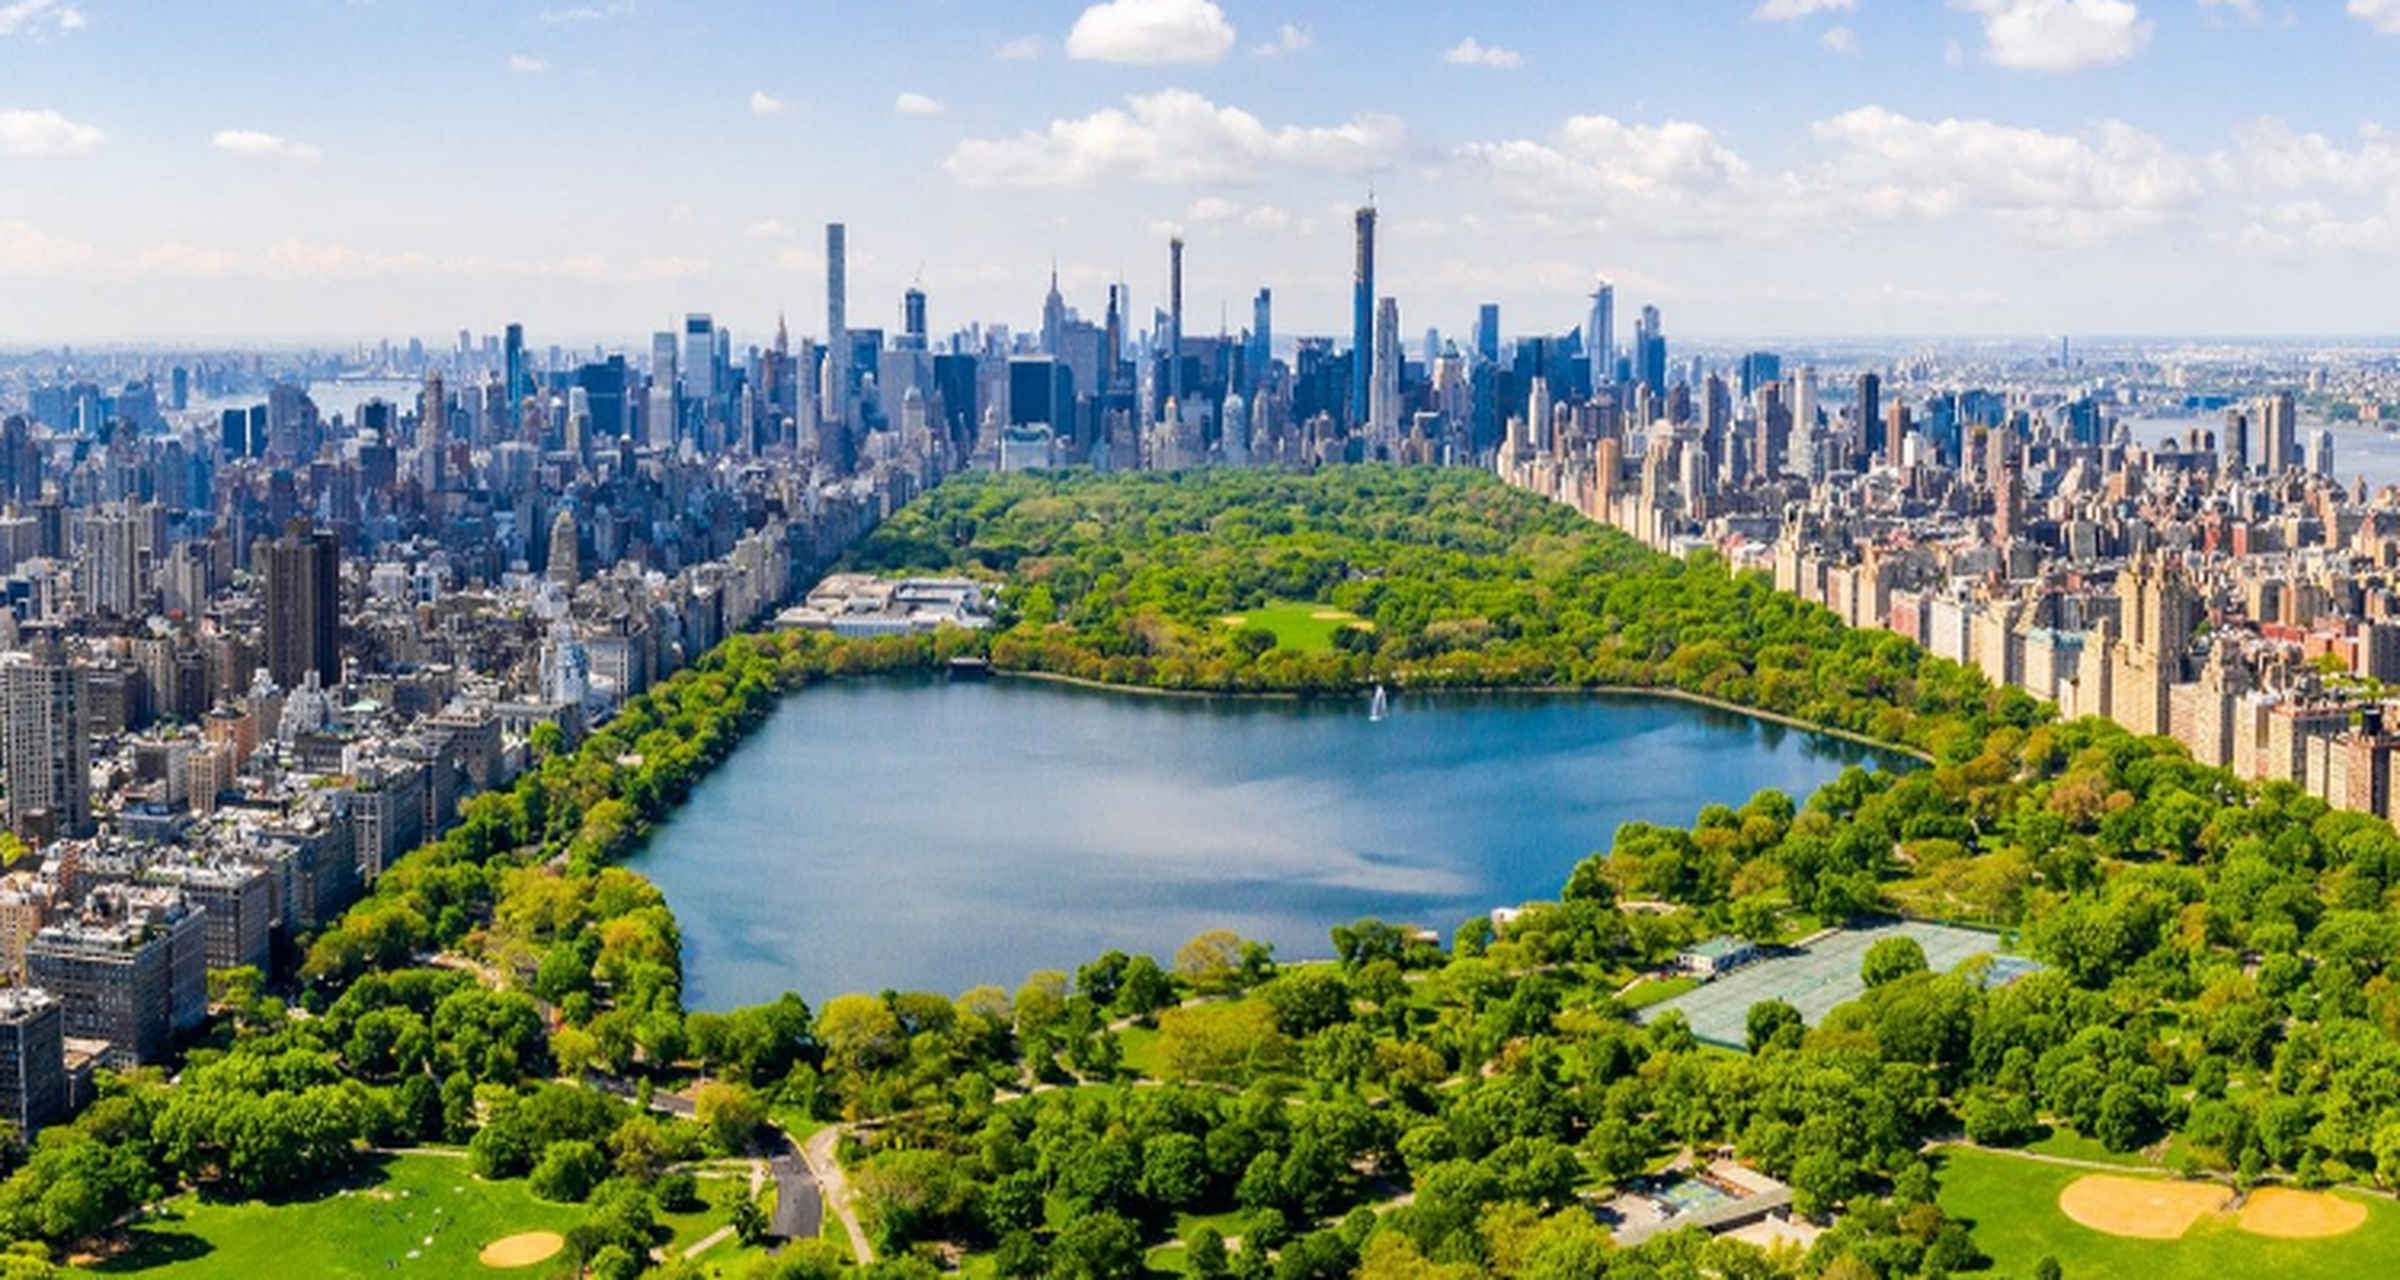 全球最美的风景名胜 纽约中央公园 中央公园是纽约最著名的公园之一